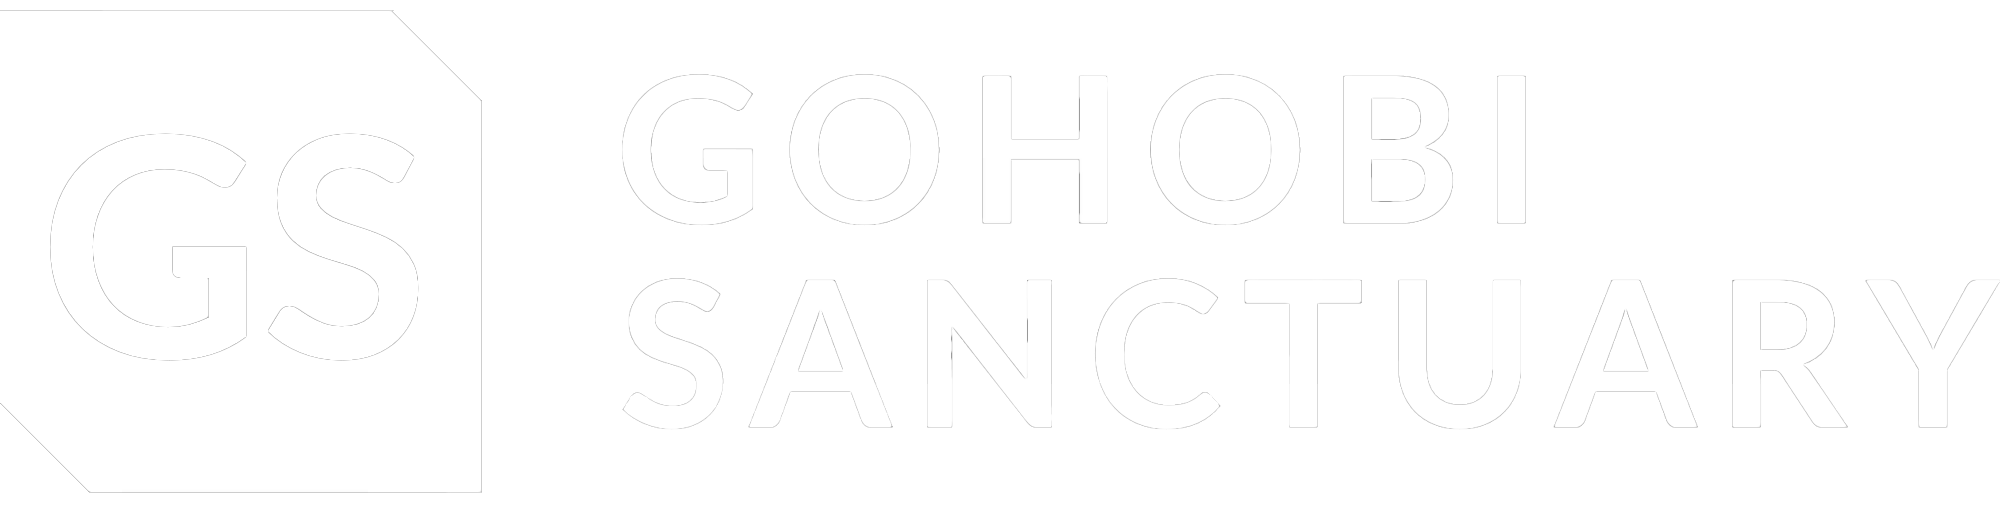 【公式】GOHOBI SANCTUARY | 最高の宿と料理のメディアサイト